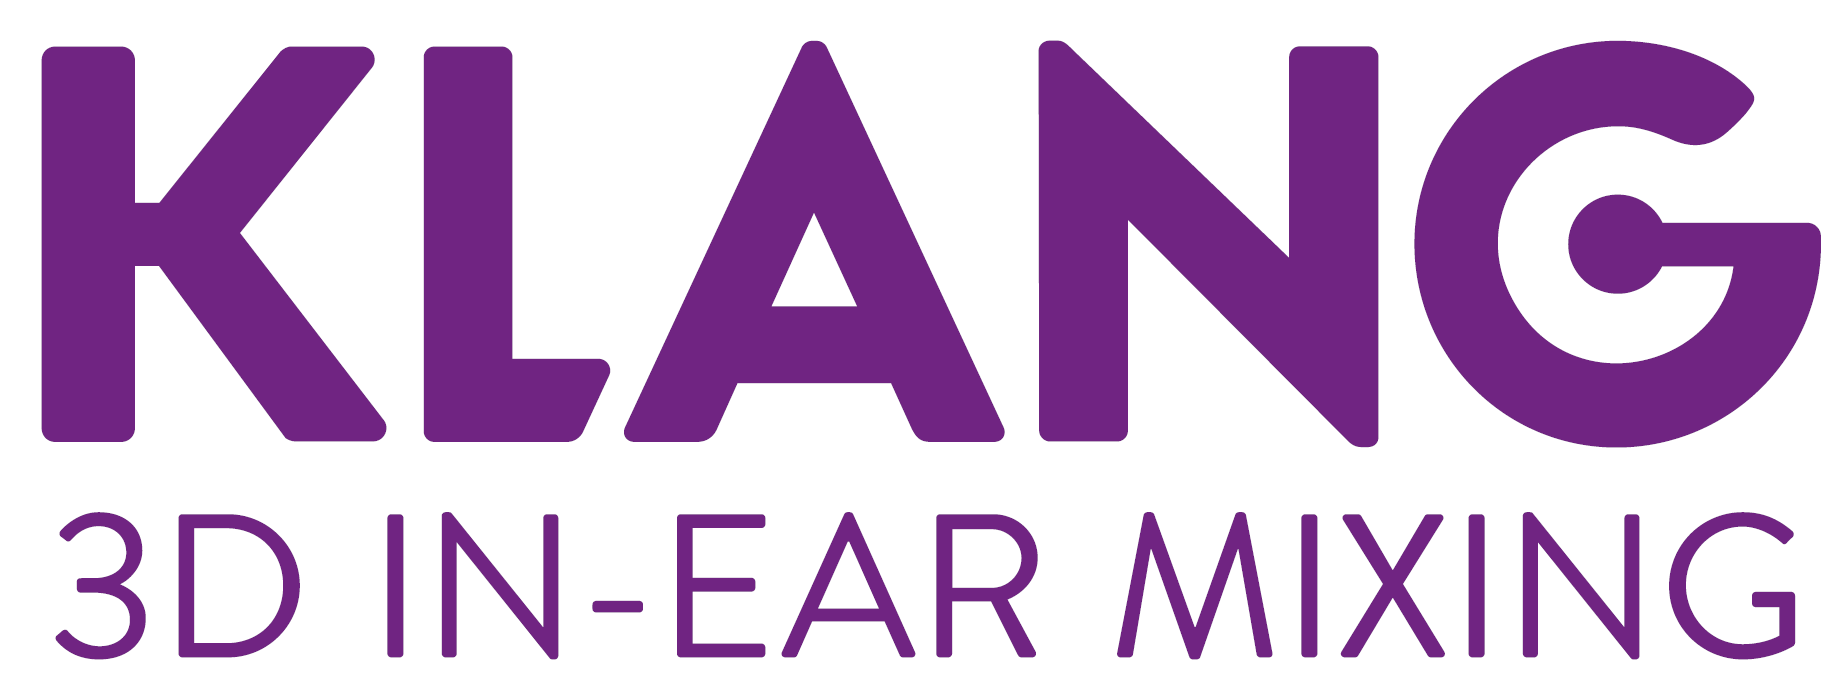 klang-logo